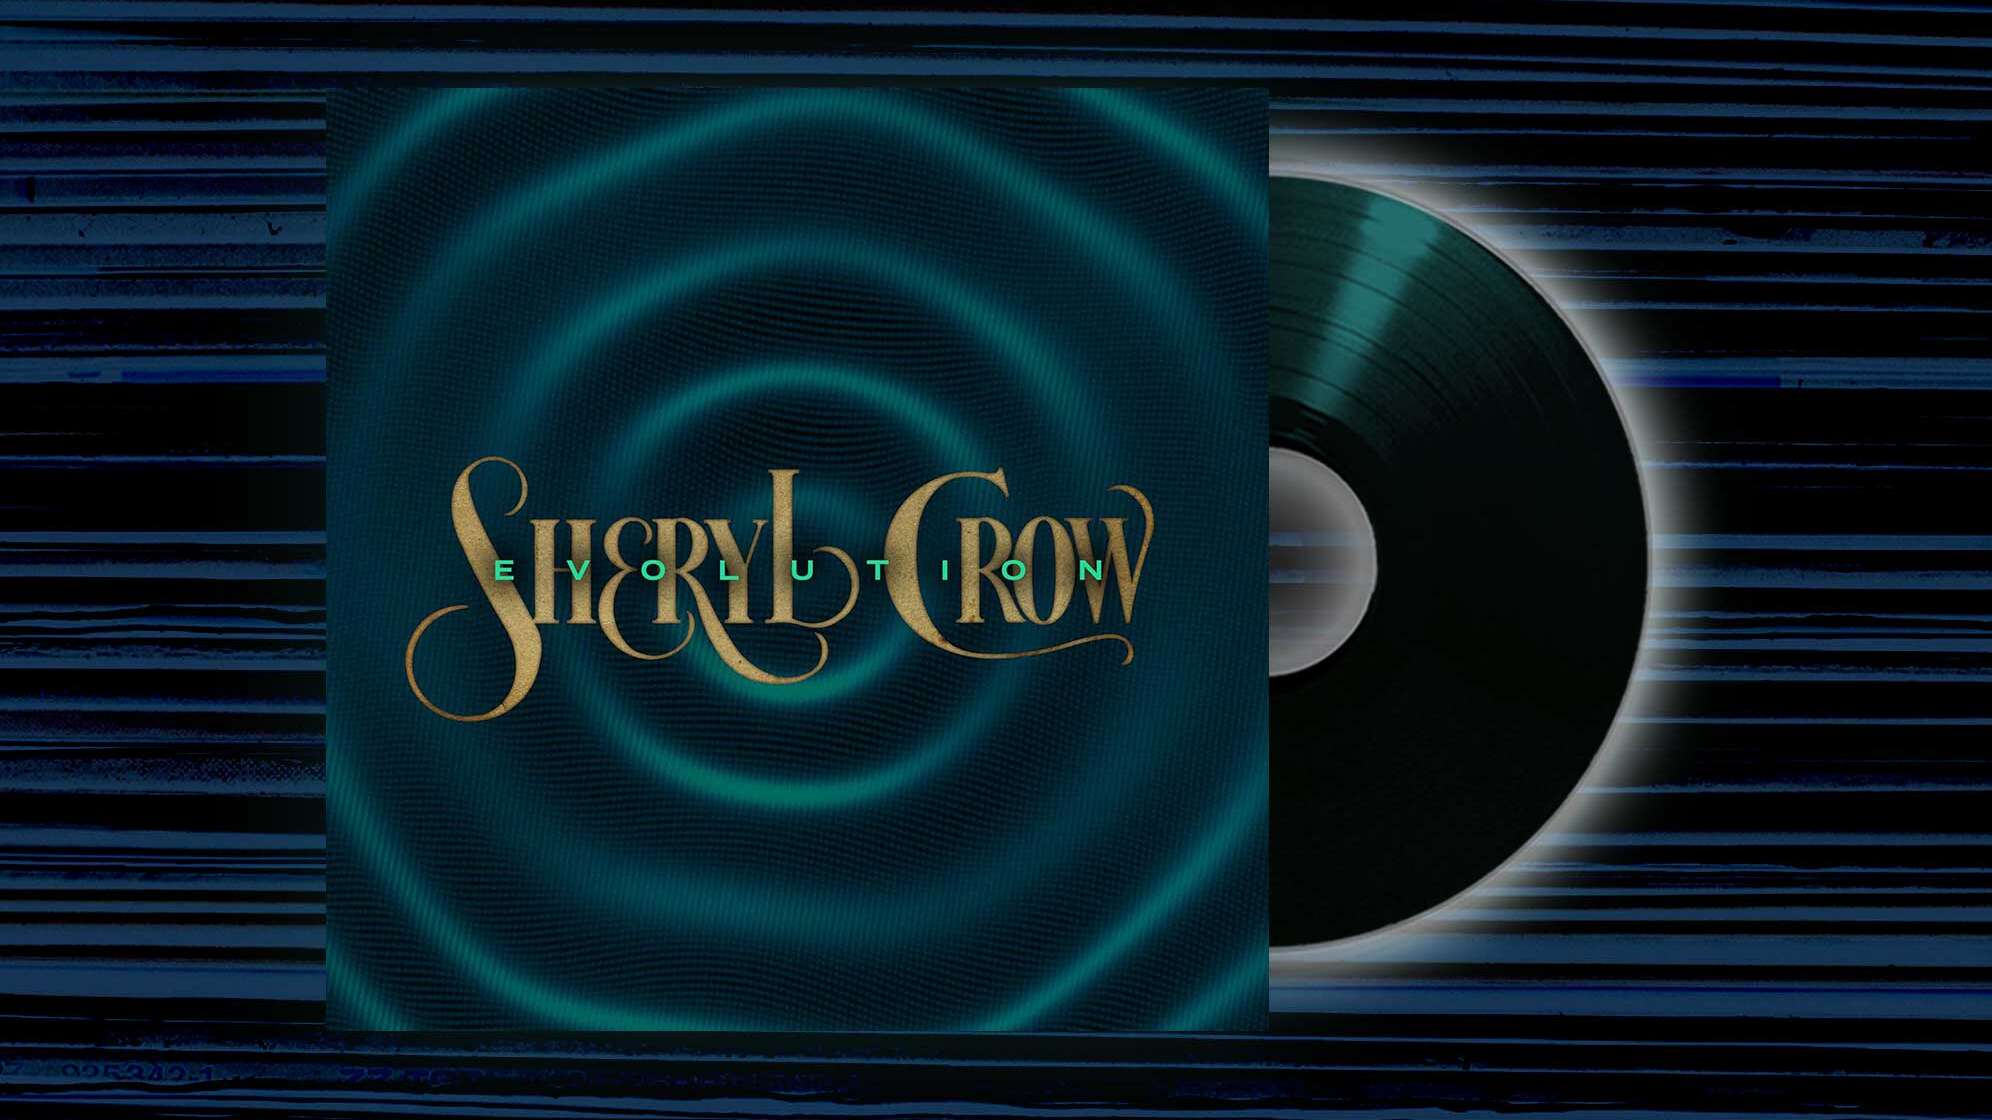 Albumfoto von Sheryl Crow